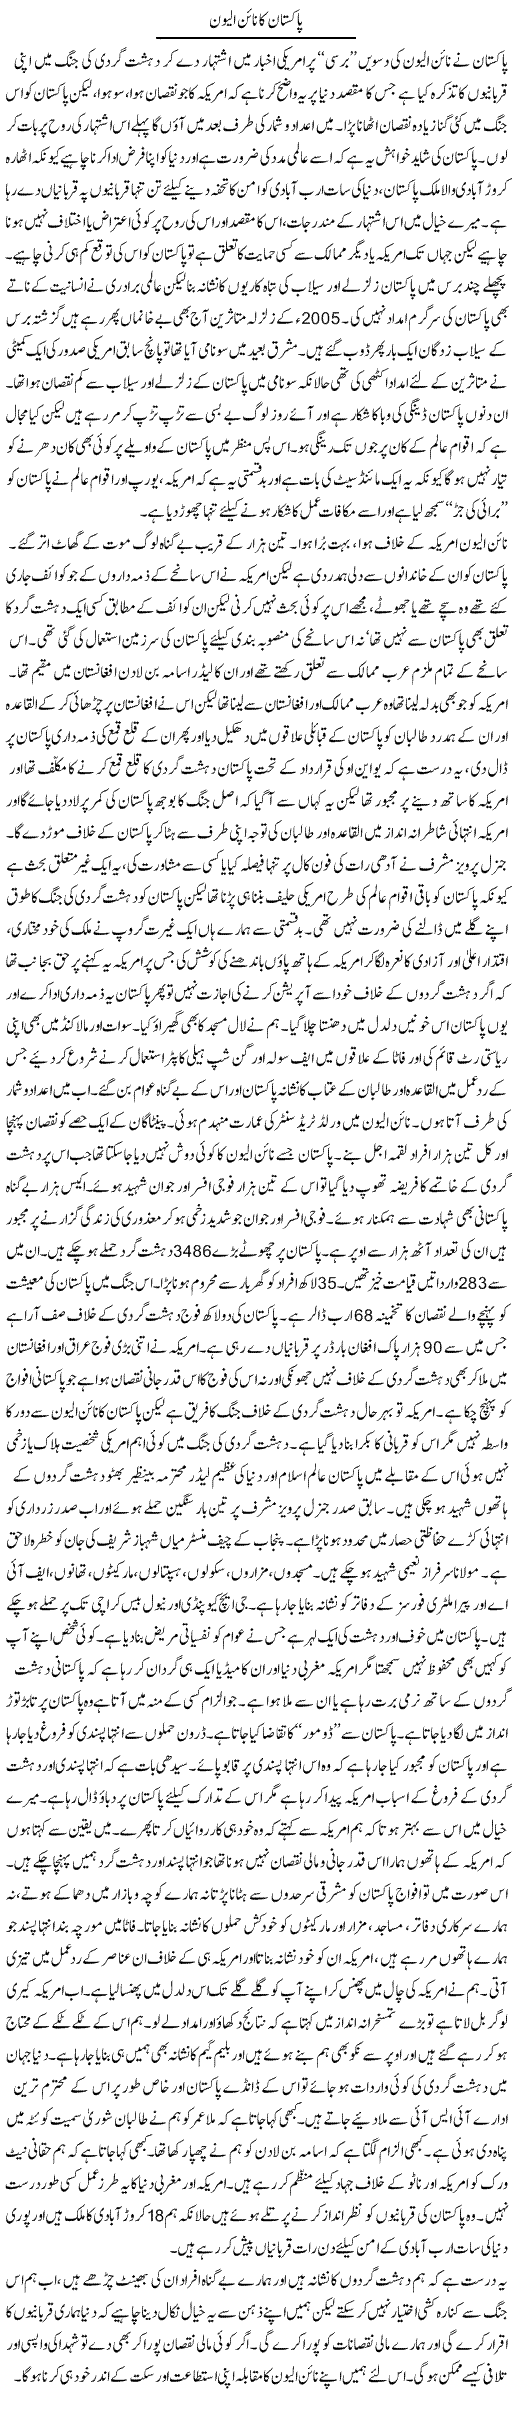 9/11 of Pakistan Express Column Asadullah Ghalib 15 September 2011